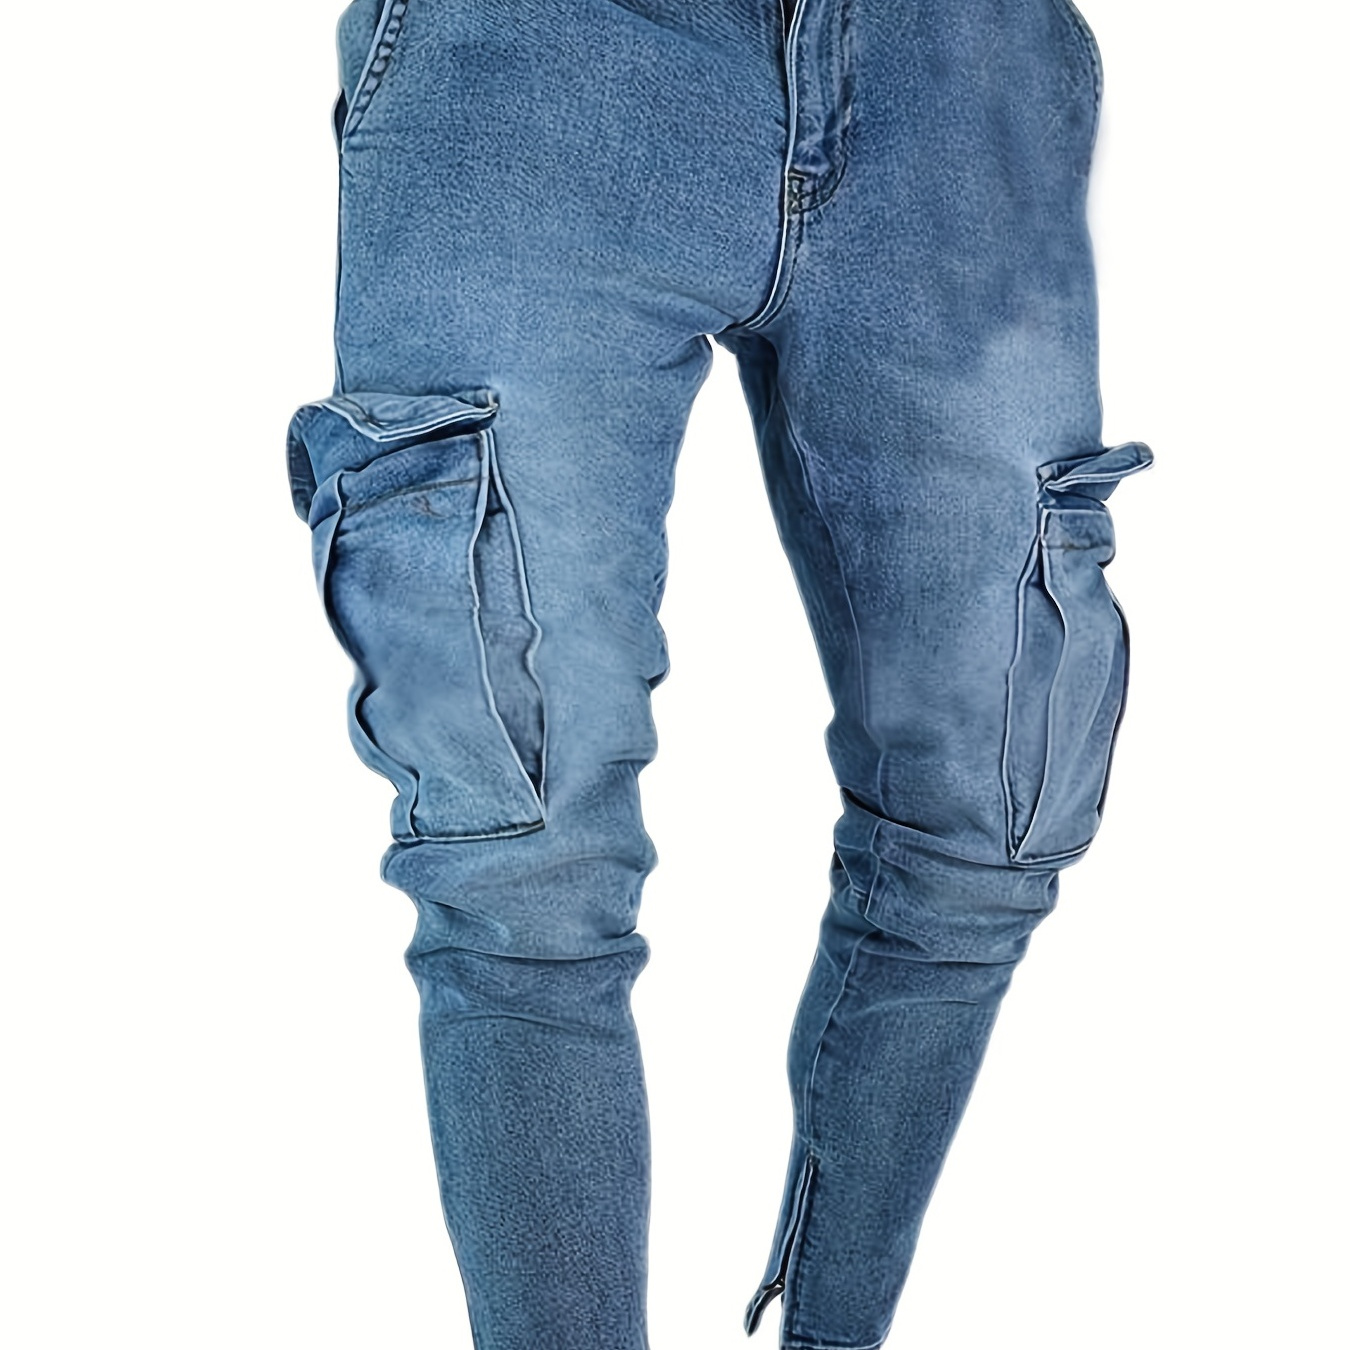 Slim Fit Flap Pocket Cargo Jeans, Men's Casual Solid Color Slightly Stretch Multi Pocket Denim Pants For Spring Summer